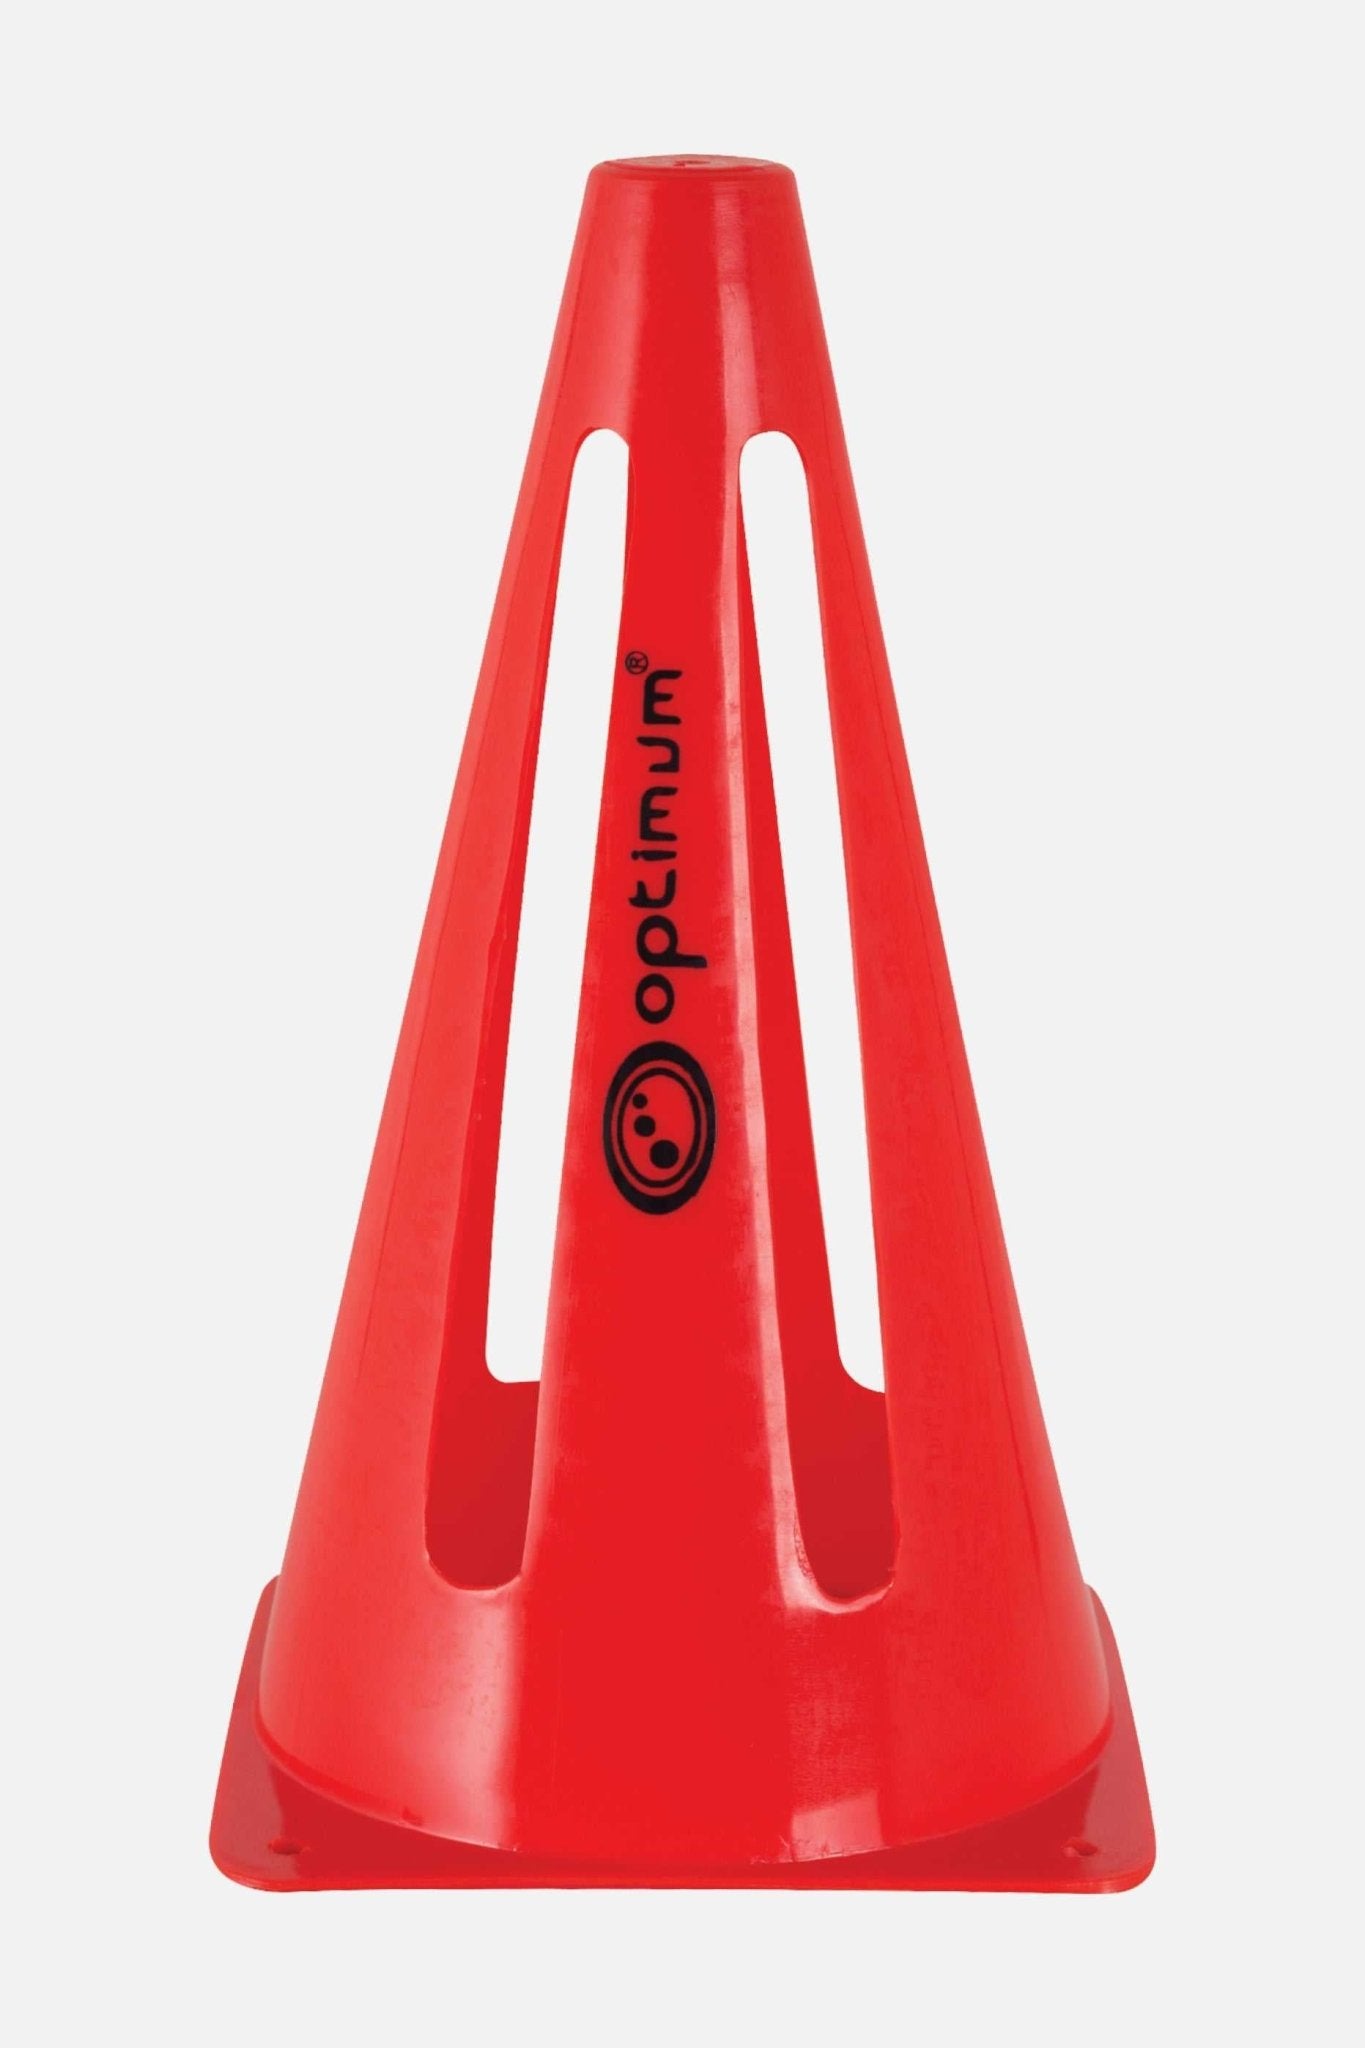 Collapsible Training Marker Cones - Optimum